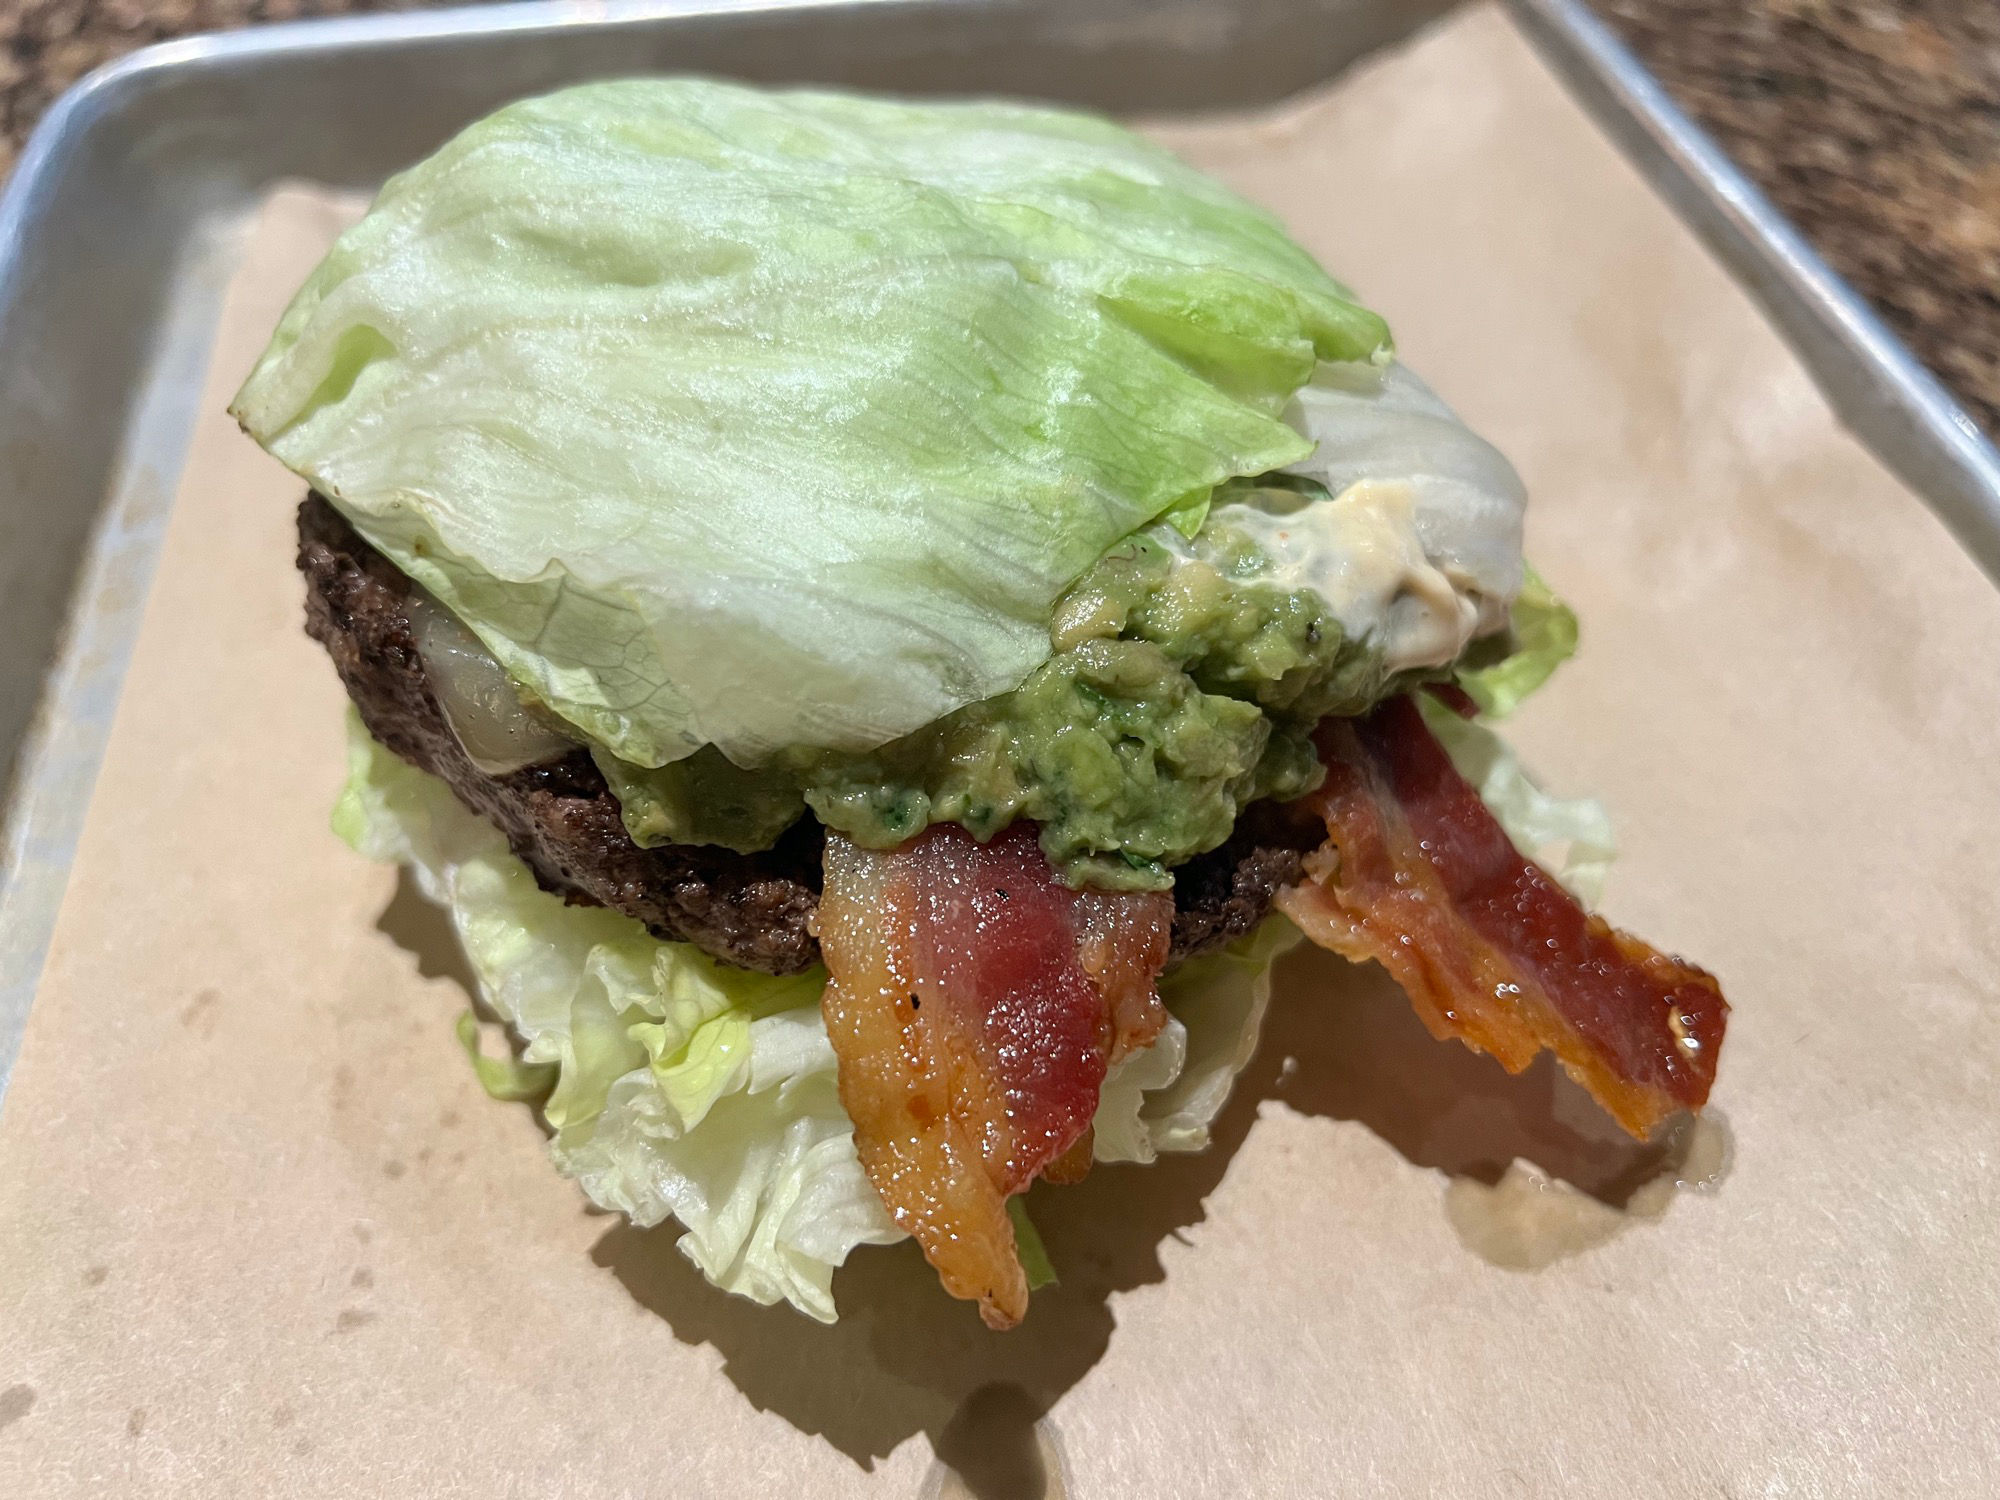 Bj's Restaurant Bacon Guacamole Deluxe Burger